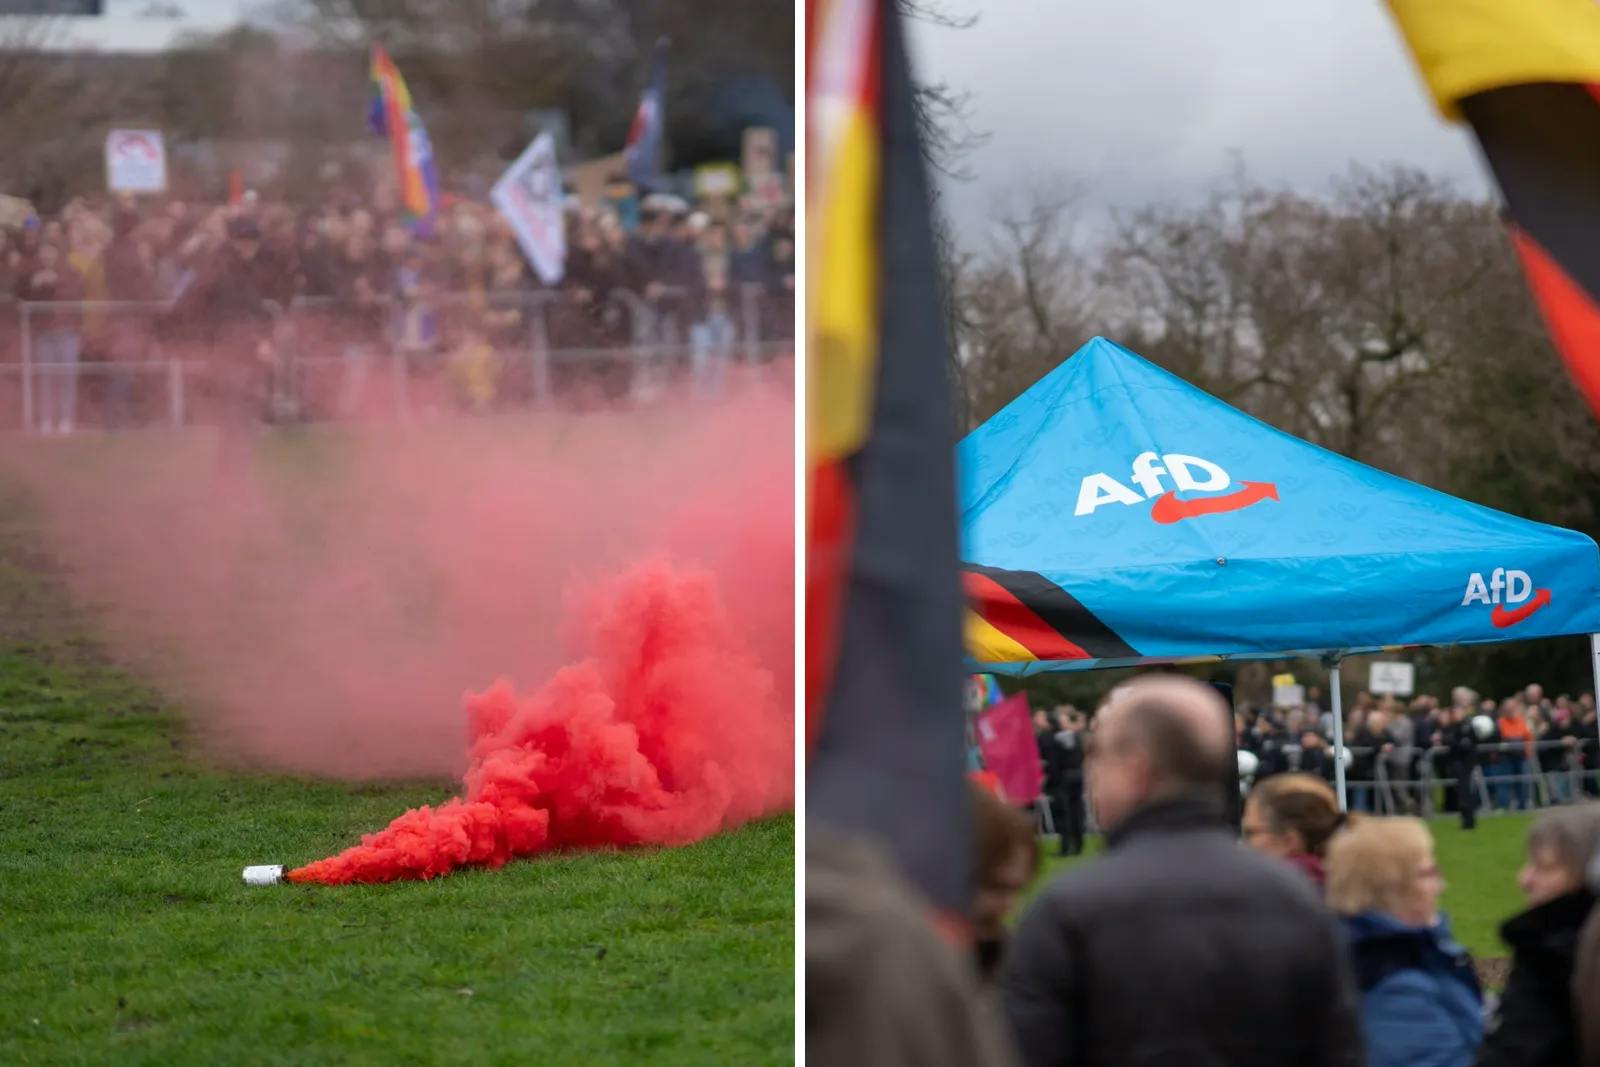 Ekel-Attacke: Linke werfen benutzte Windel und Rauchbombe auf AfD-Kundgebung